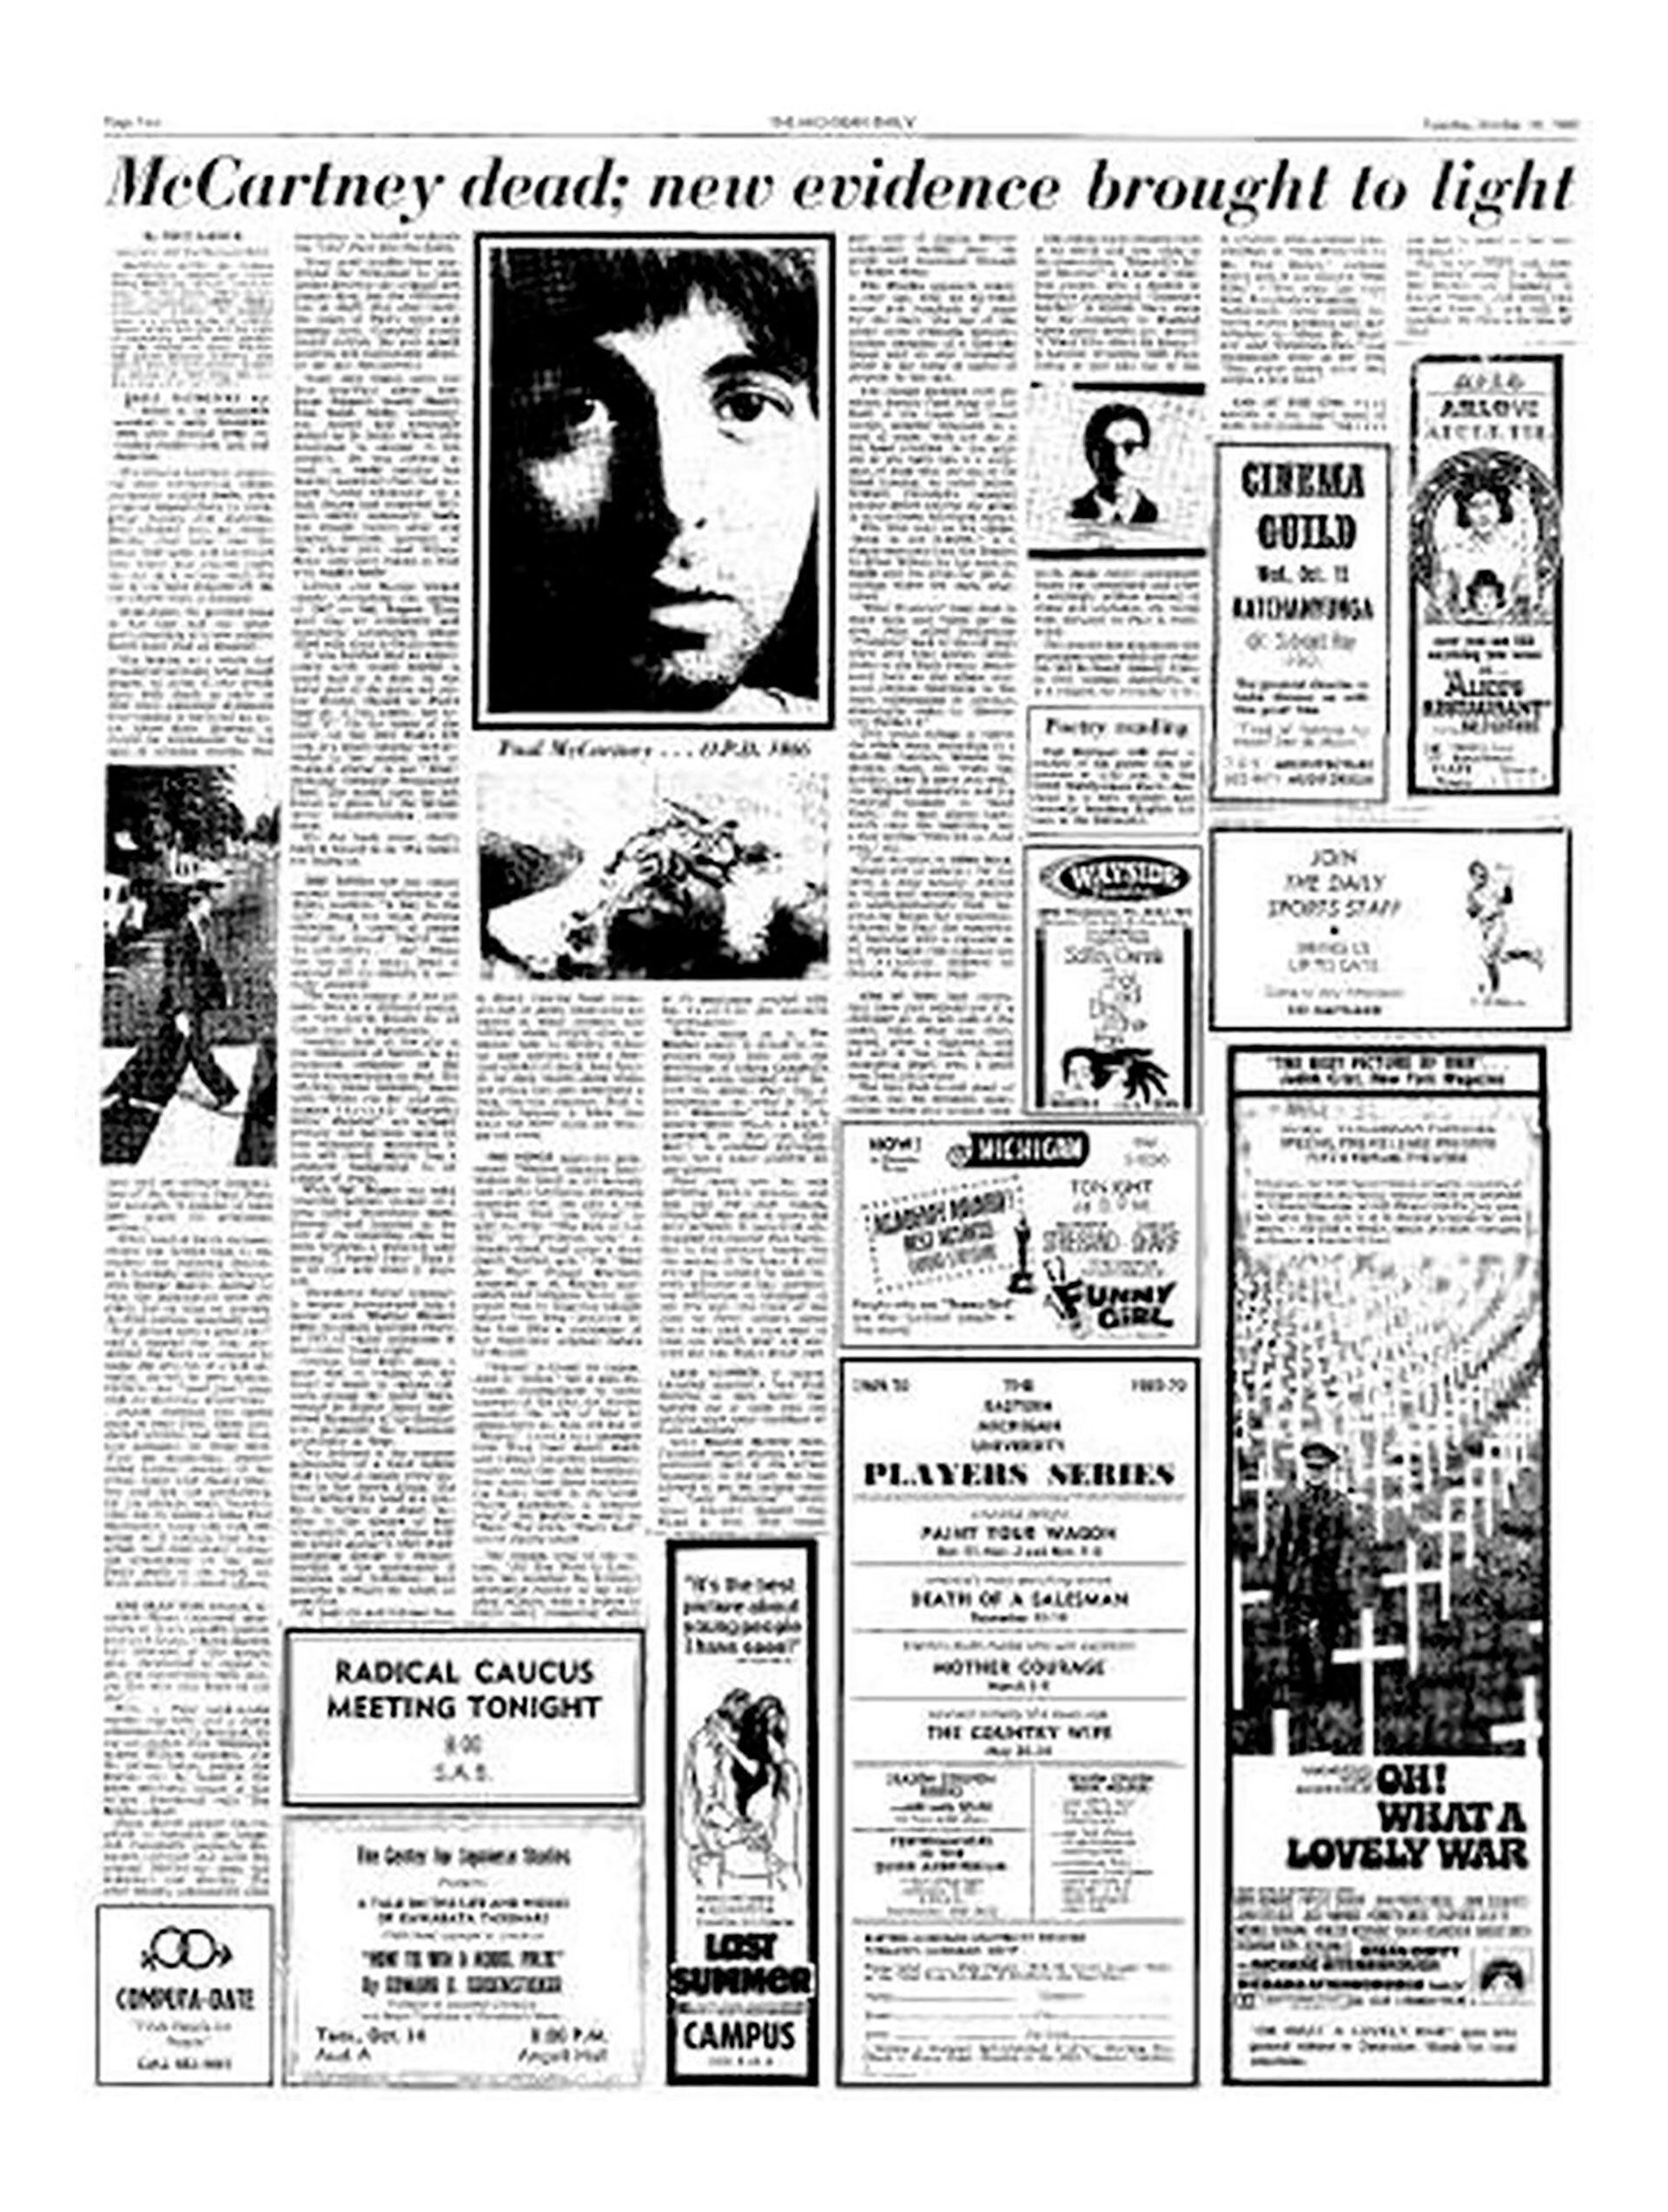 Un diario norteamericano descubriendo muchas evidencias sobre la muerte de Paul McCartney